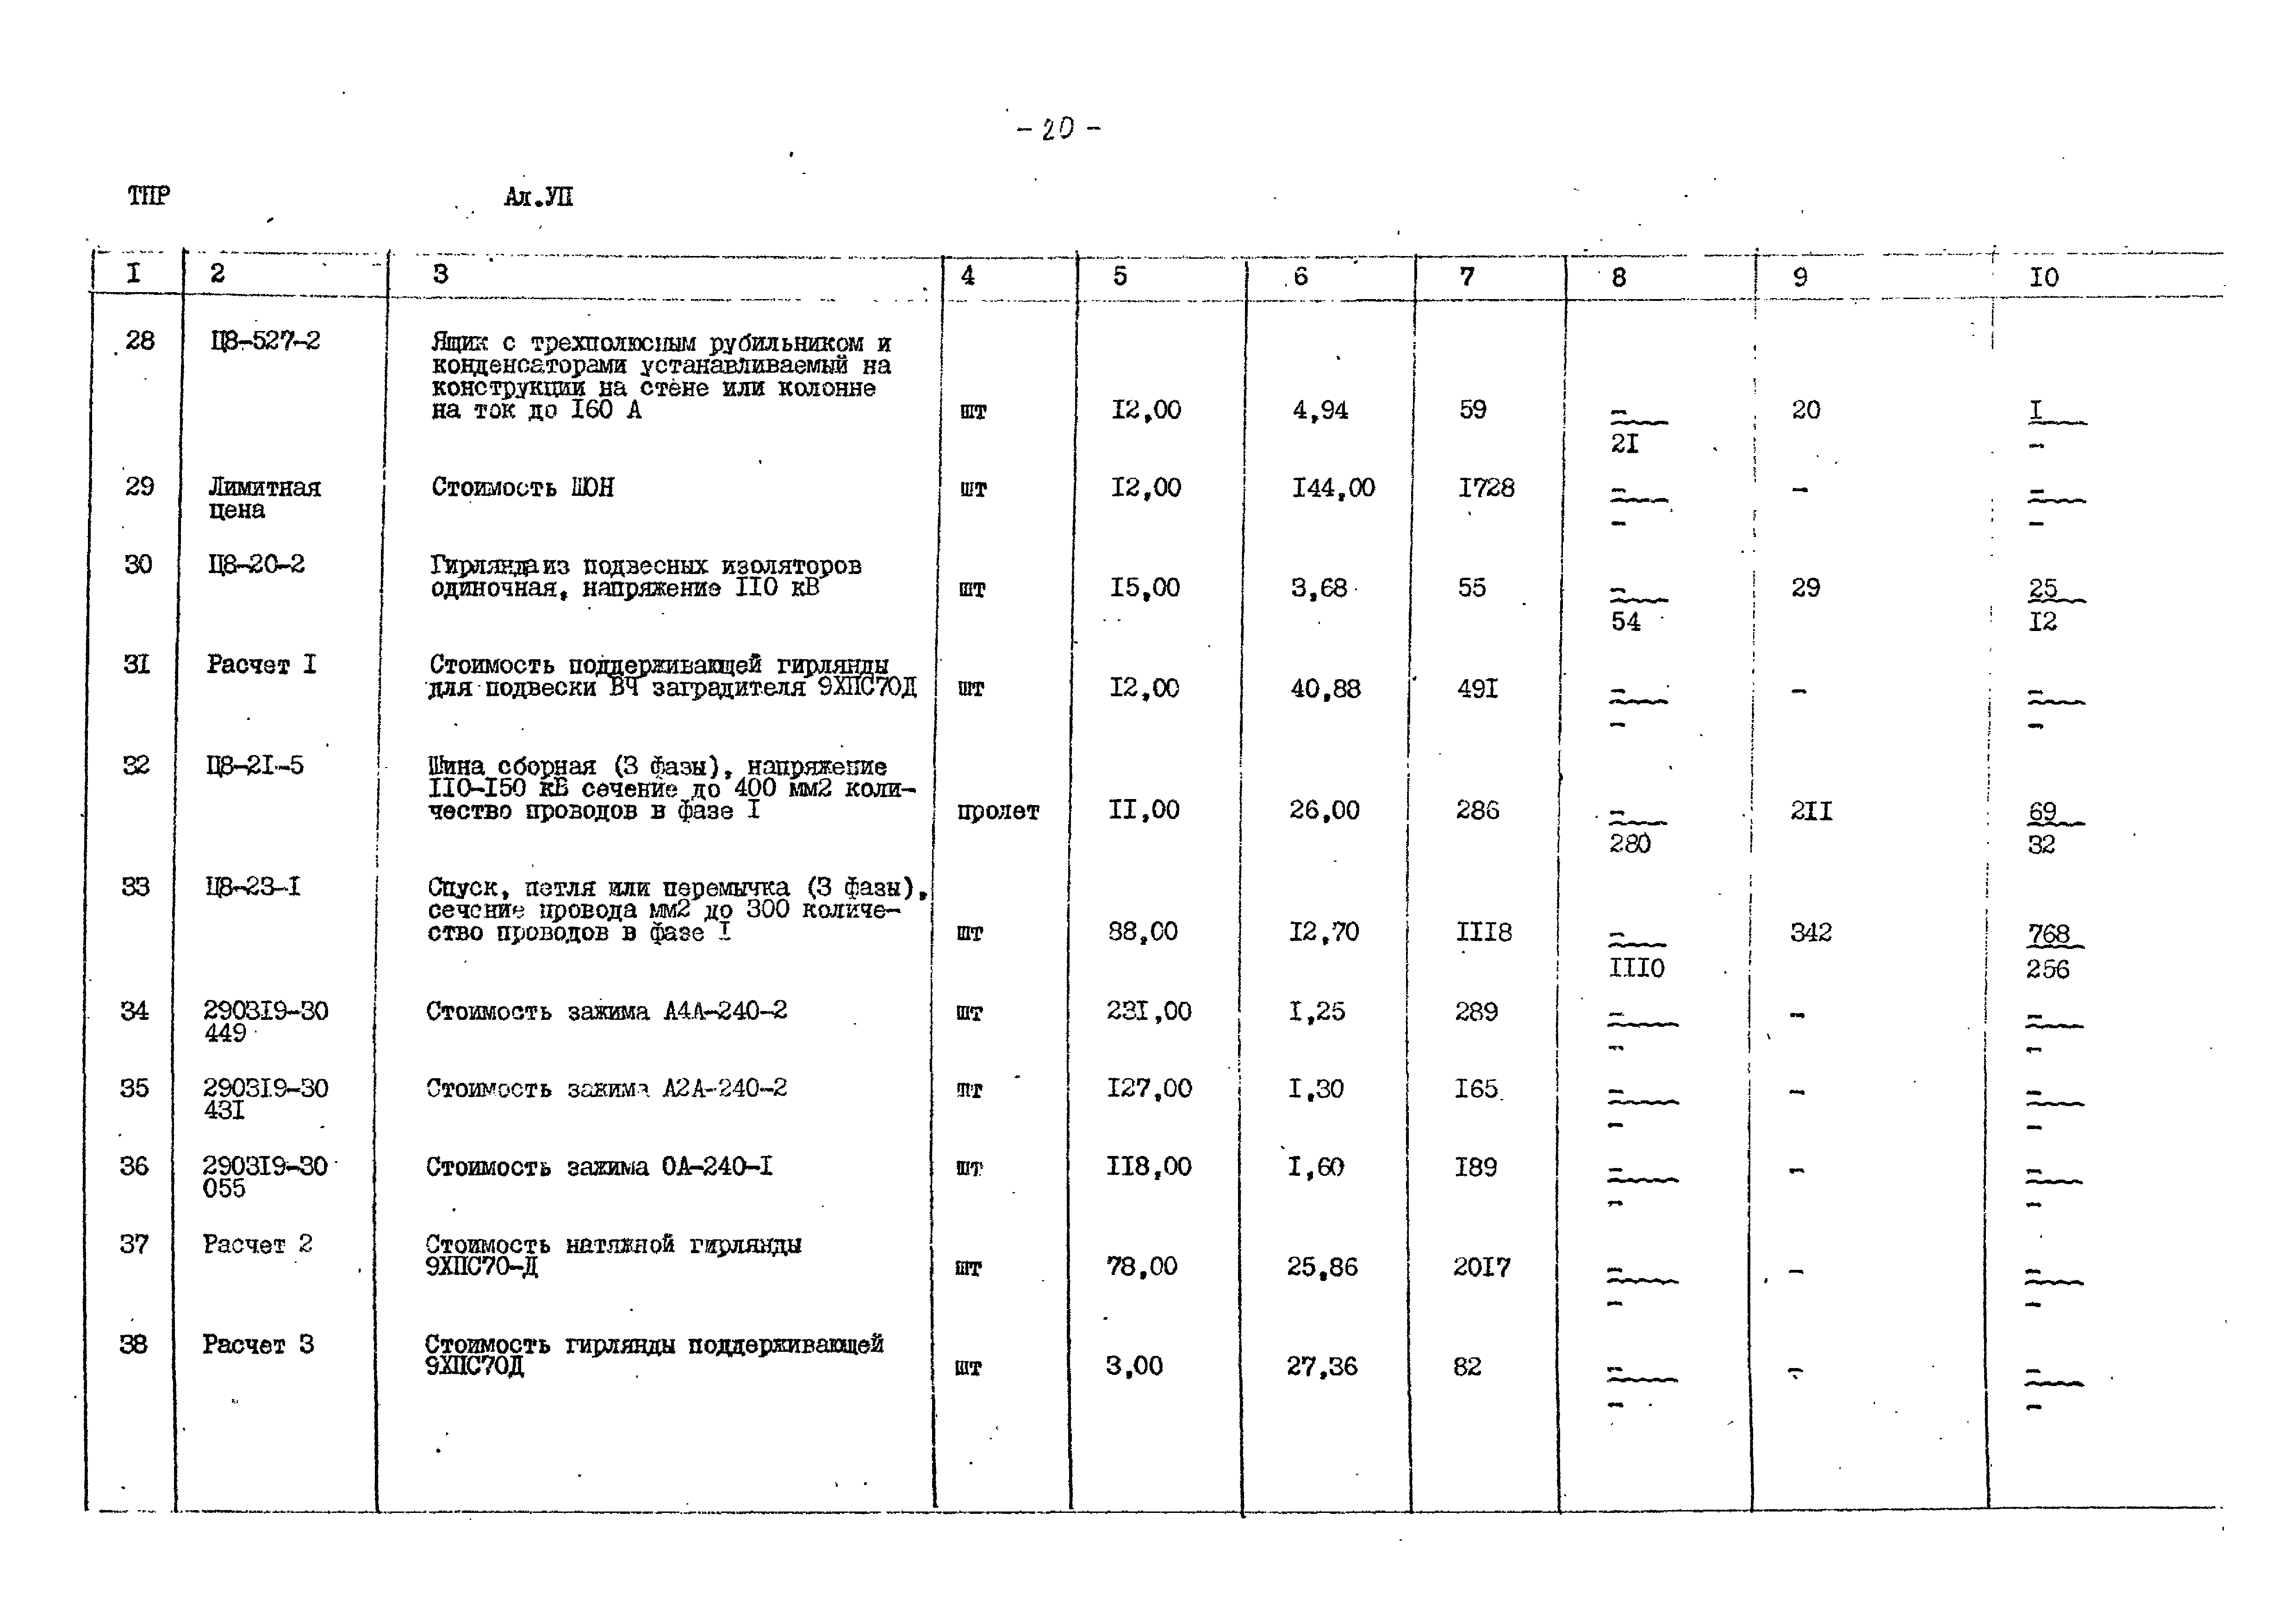 Типовые проектные решения 407-0-166.85